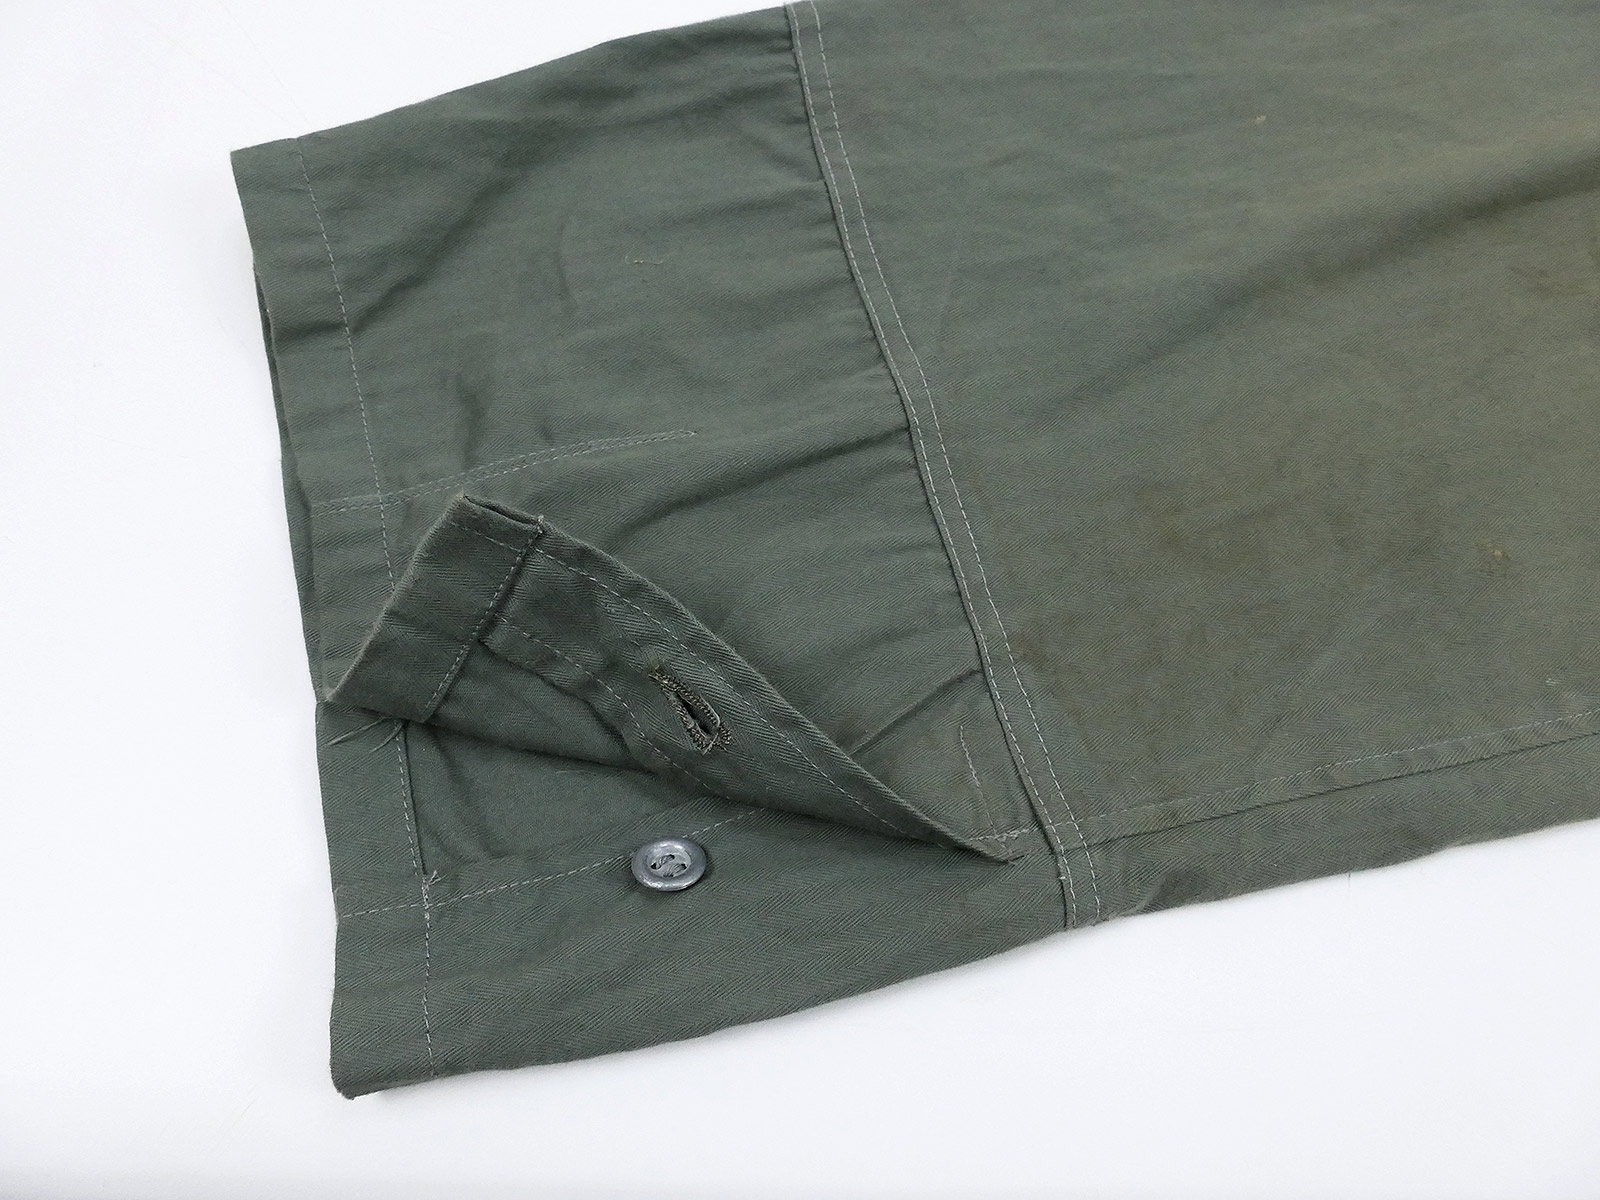 Single piece - Drillichhose wedge pants Wehrmacht 4XL uniform pants ...